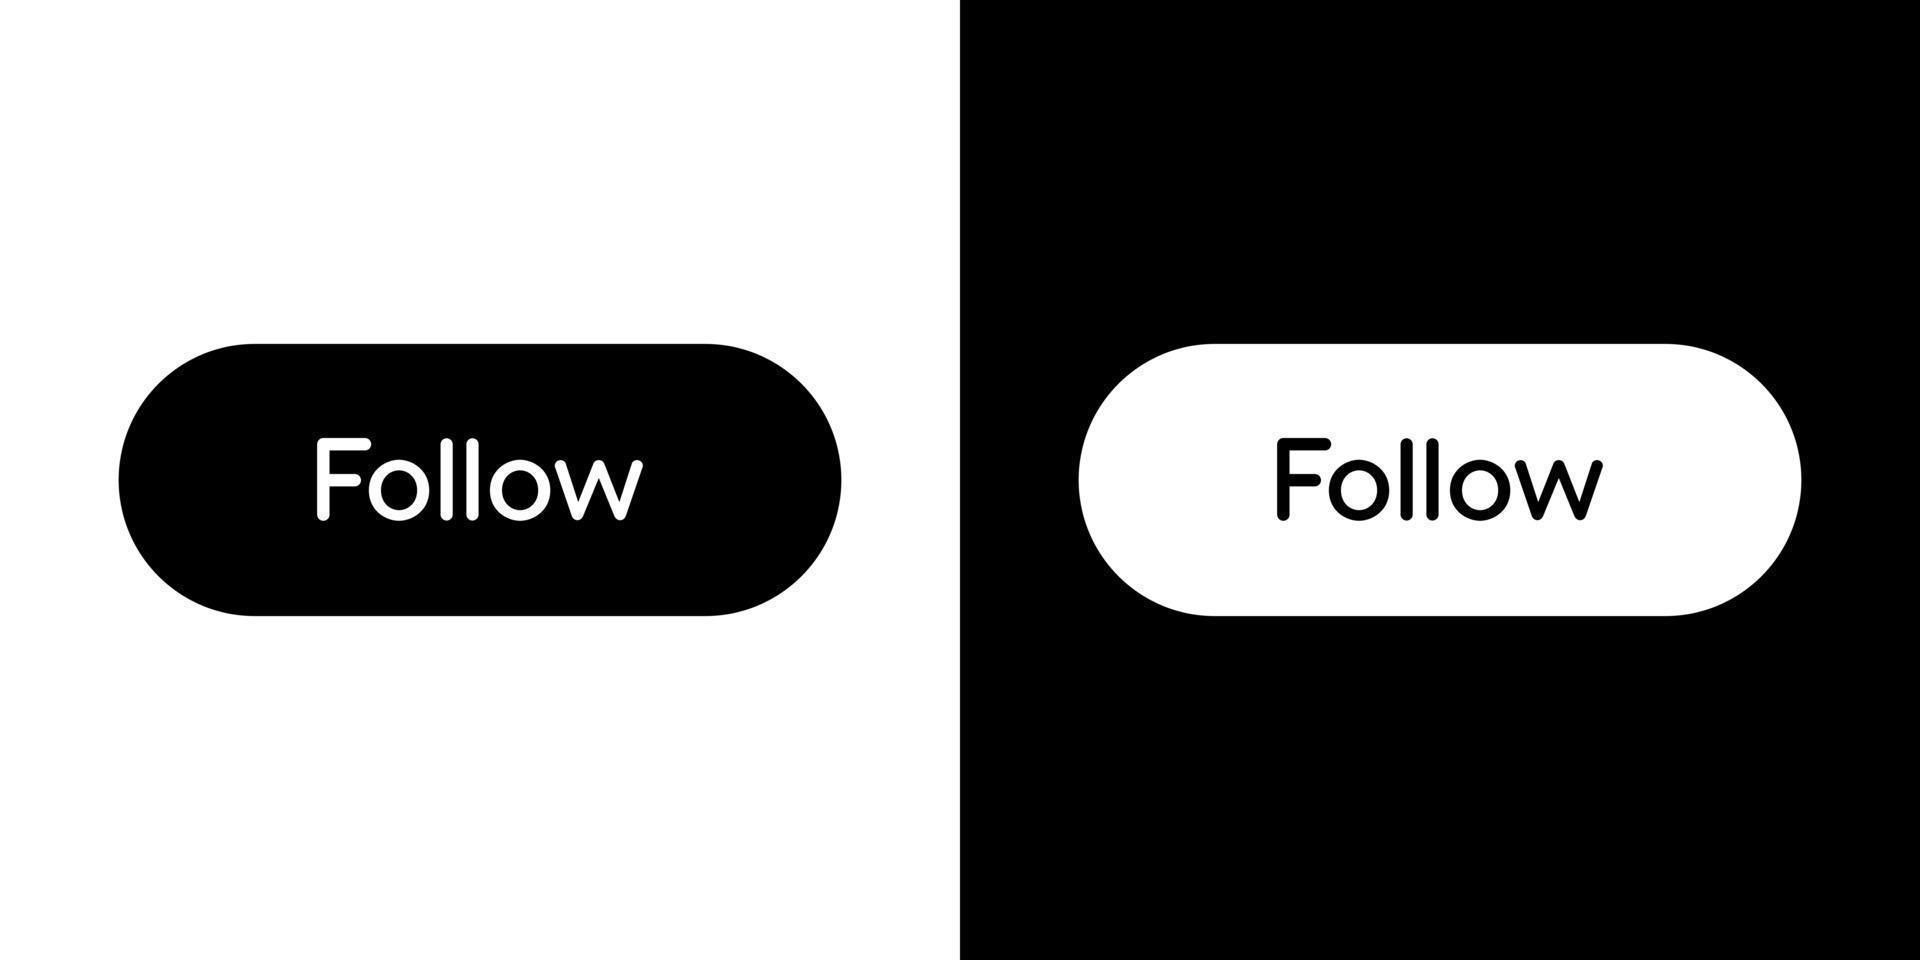 siga o vetor de ícone de botão no estilo clipart. elementos de mídia social